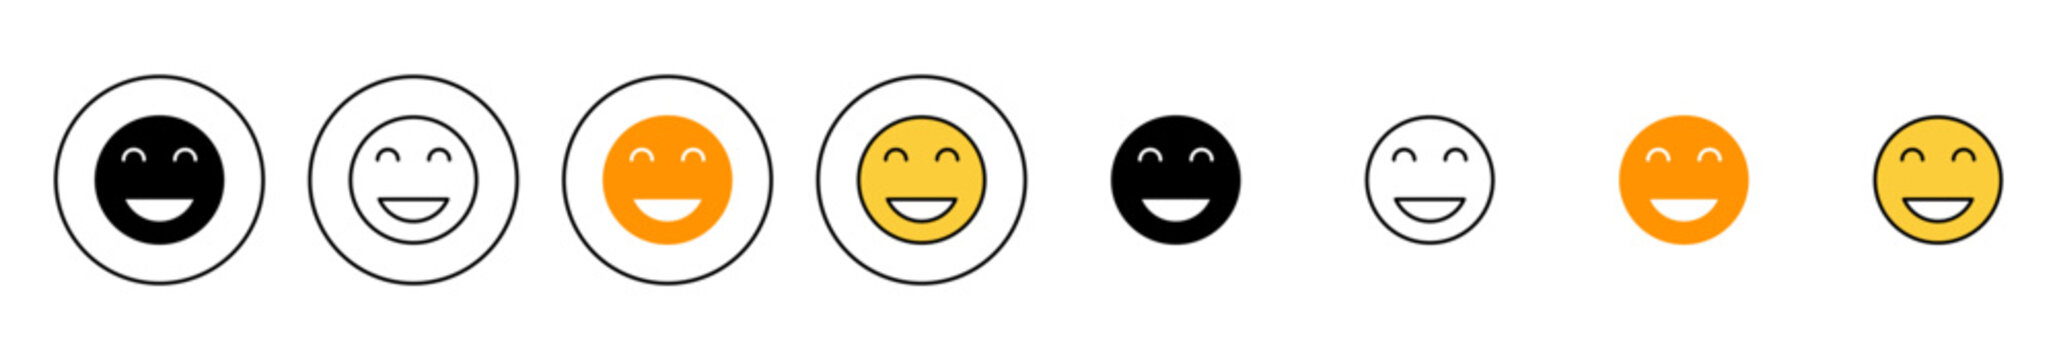 smile icon set vector. smile emoticon icon. feedback sign and symbol